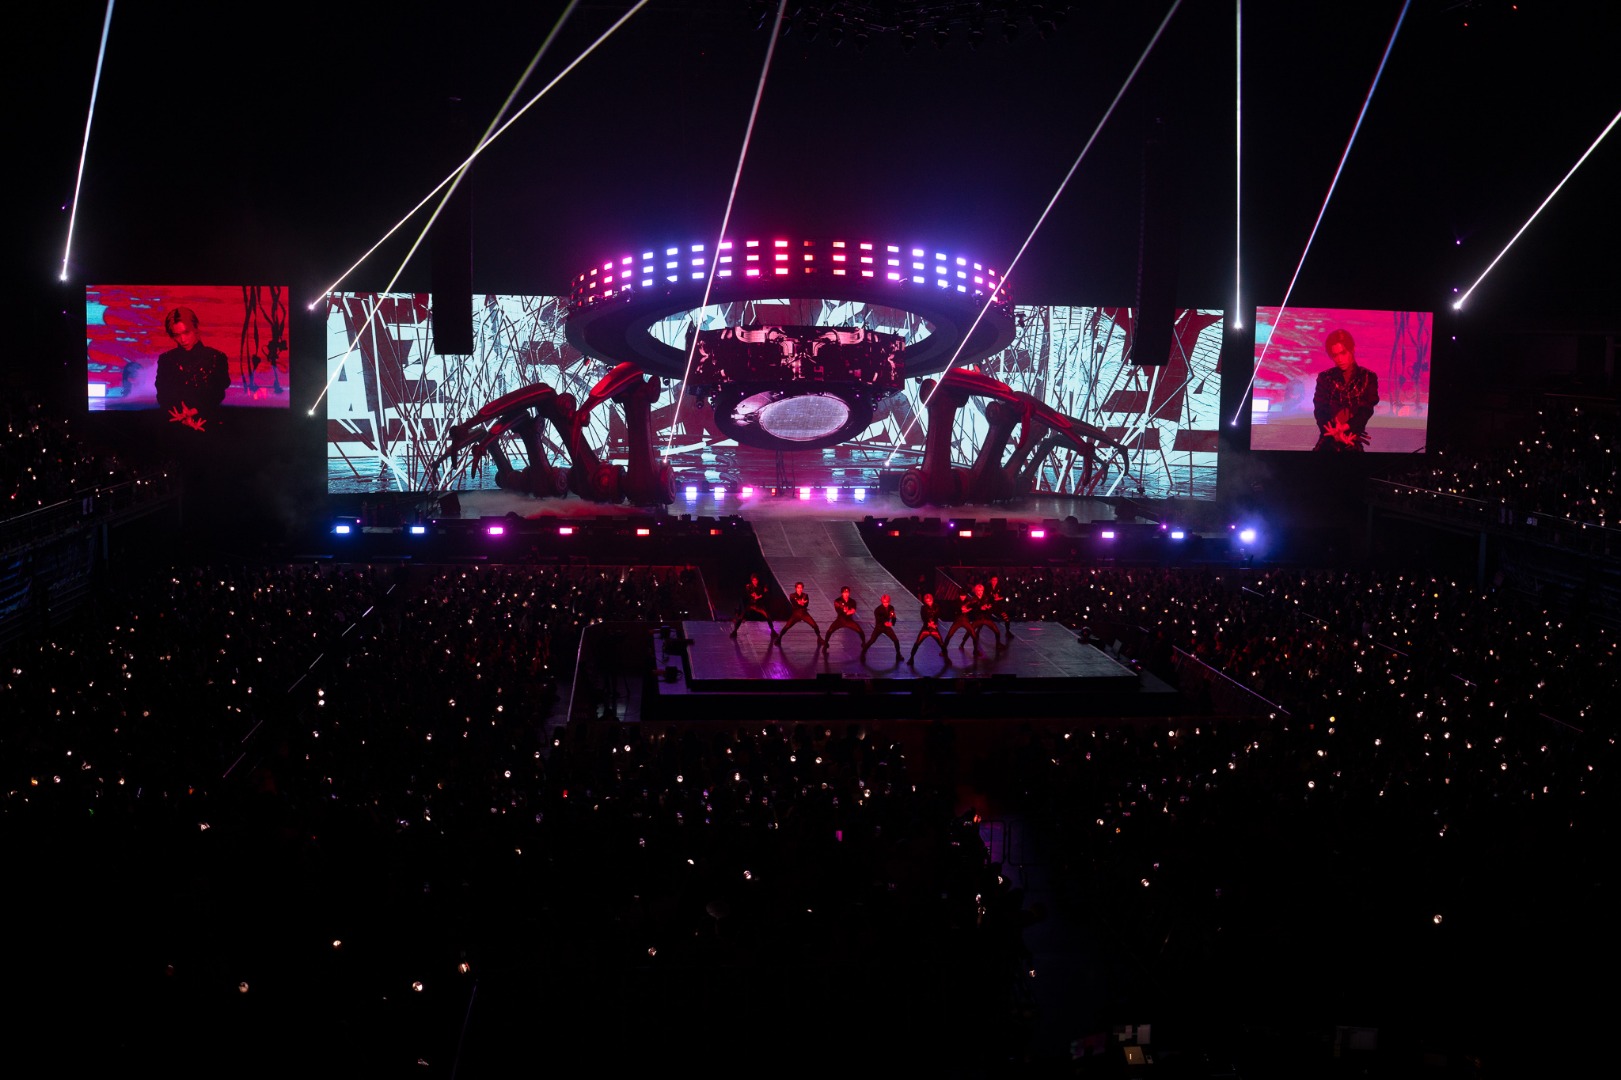 “ที่สุด” แห่งวงการเพลงประจำปี 2023 โดยทีมงาน Sanook